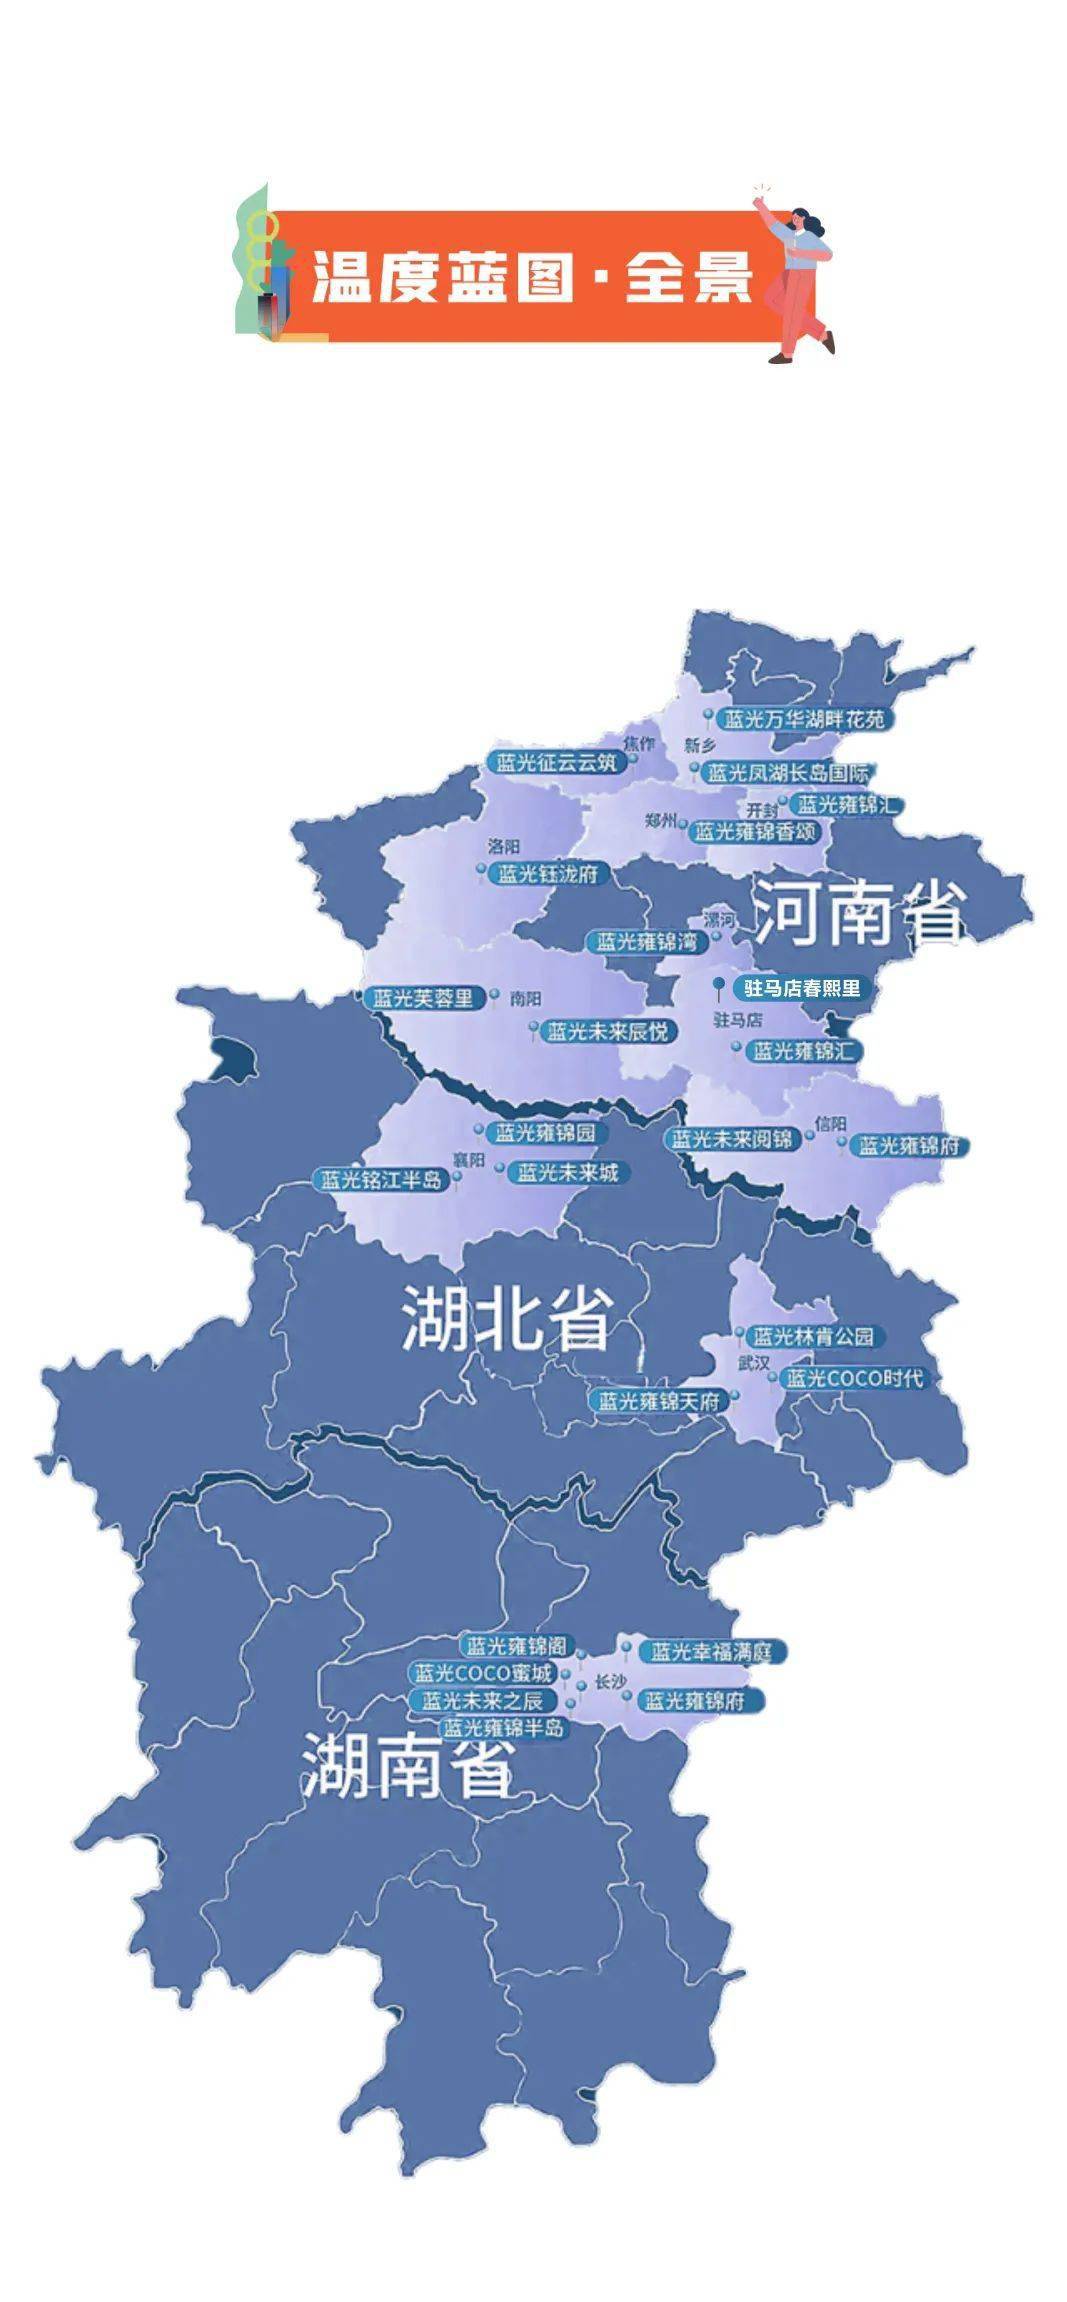 『温度蓝图』蓝光发展华中区域12月客户服务地图